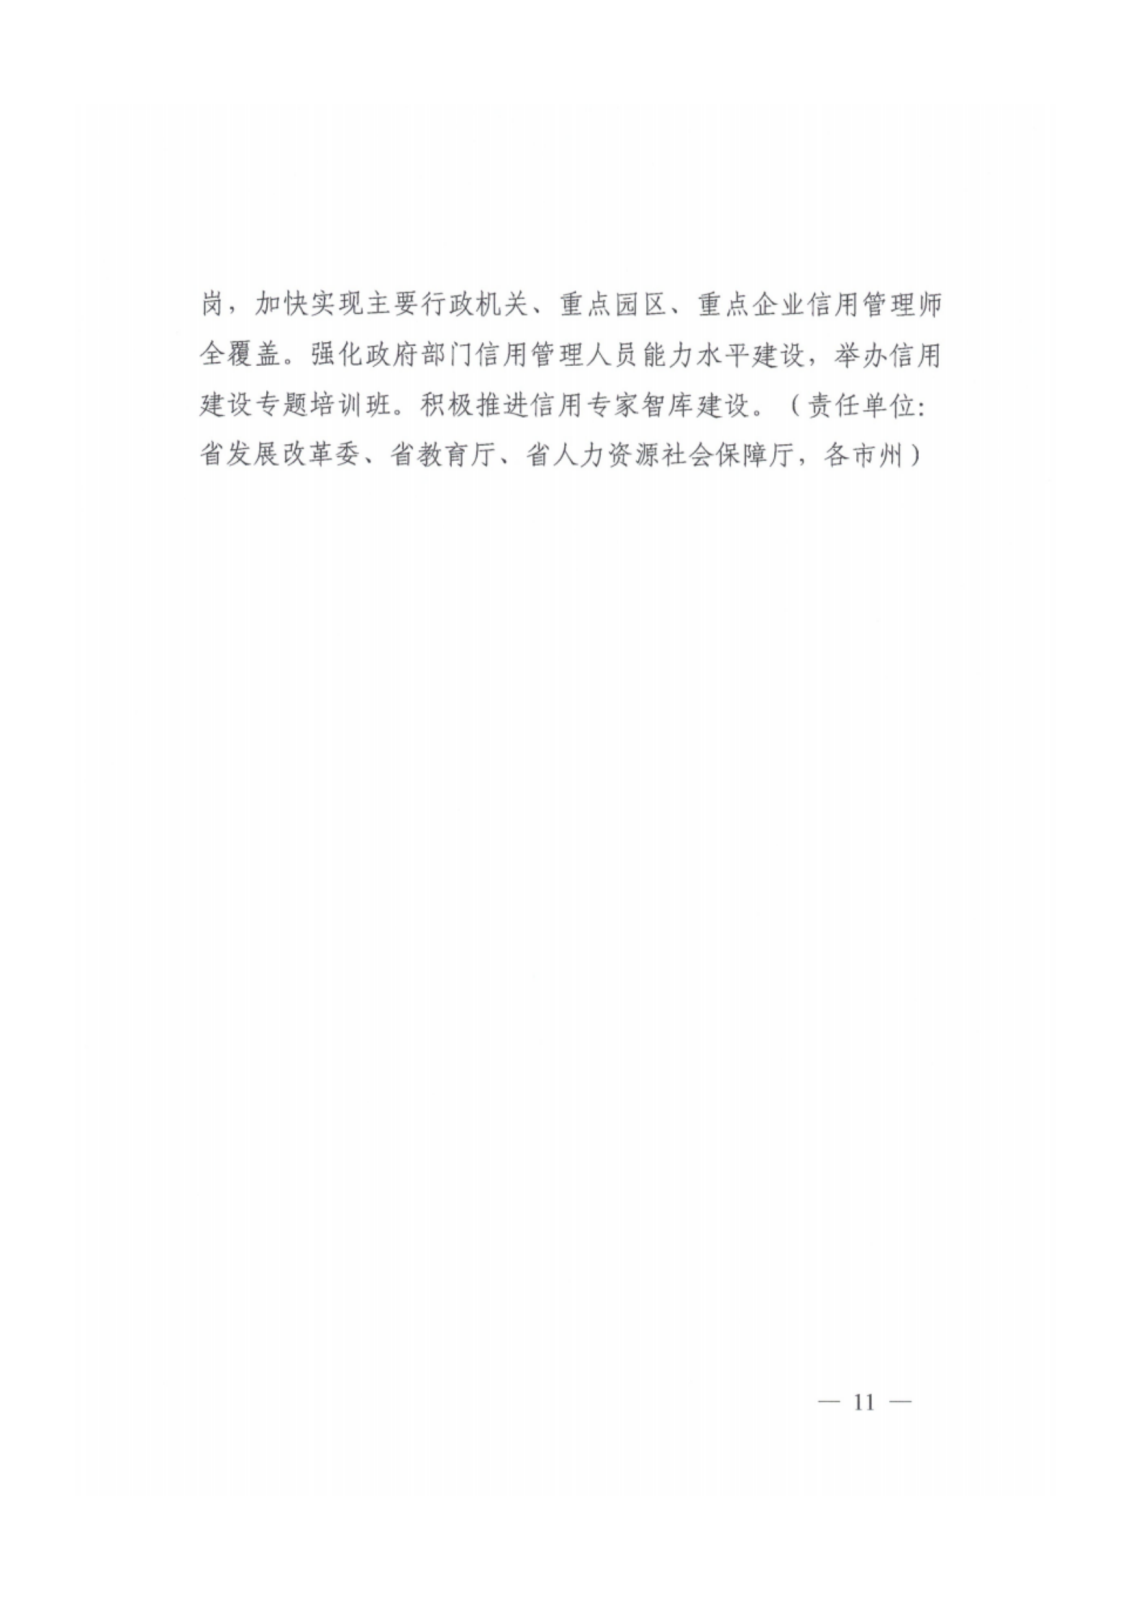 2023年湖南省社会信用体系建设工作要点_10.png